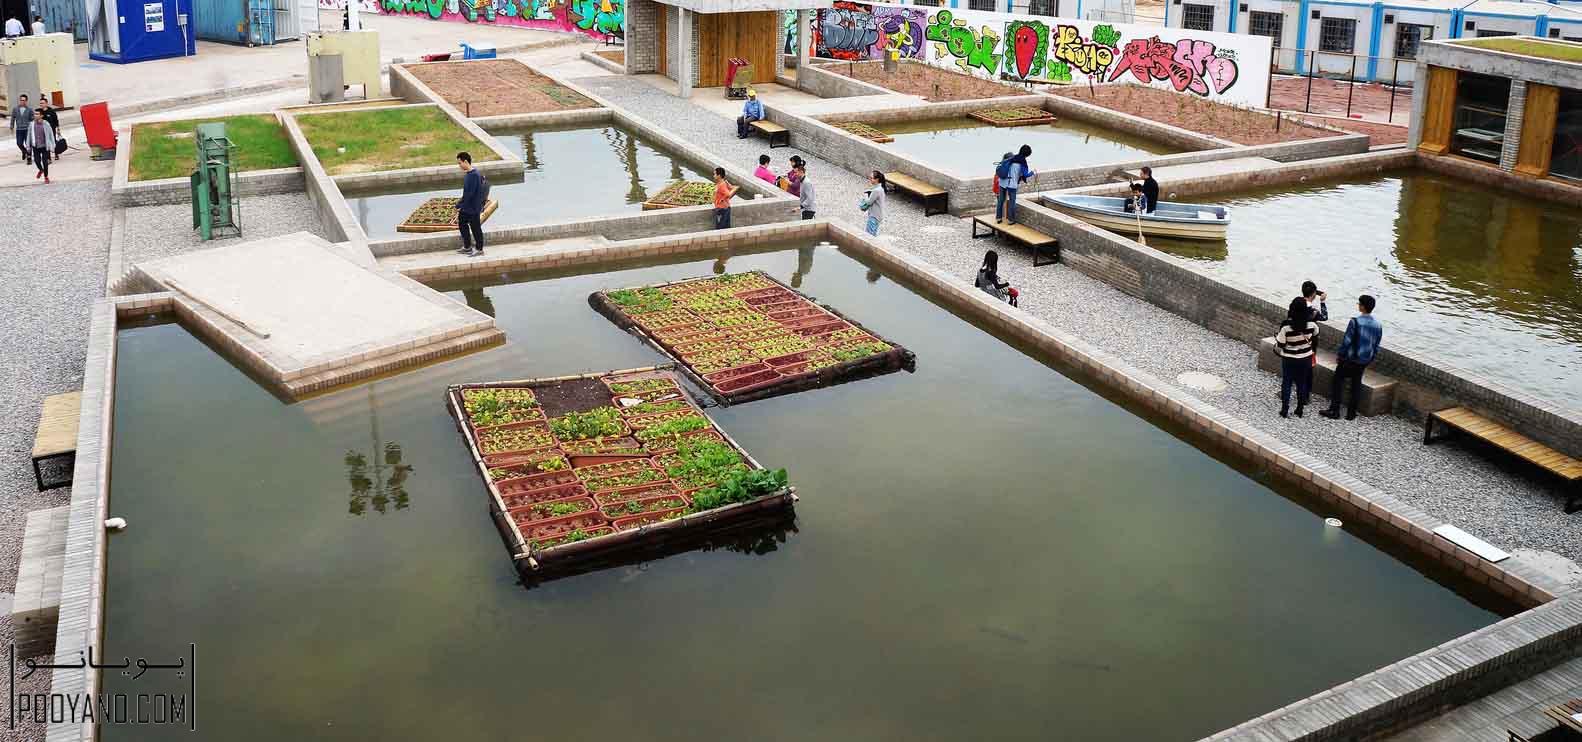 ایده معماری " زمین های کشاورزی شناور " برنده جایزه شنژن UABB / معمار توماس چانگ